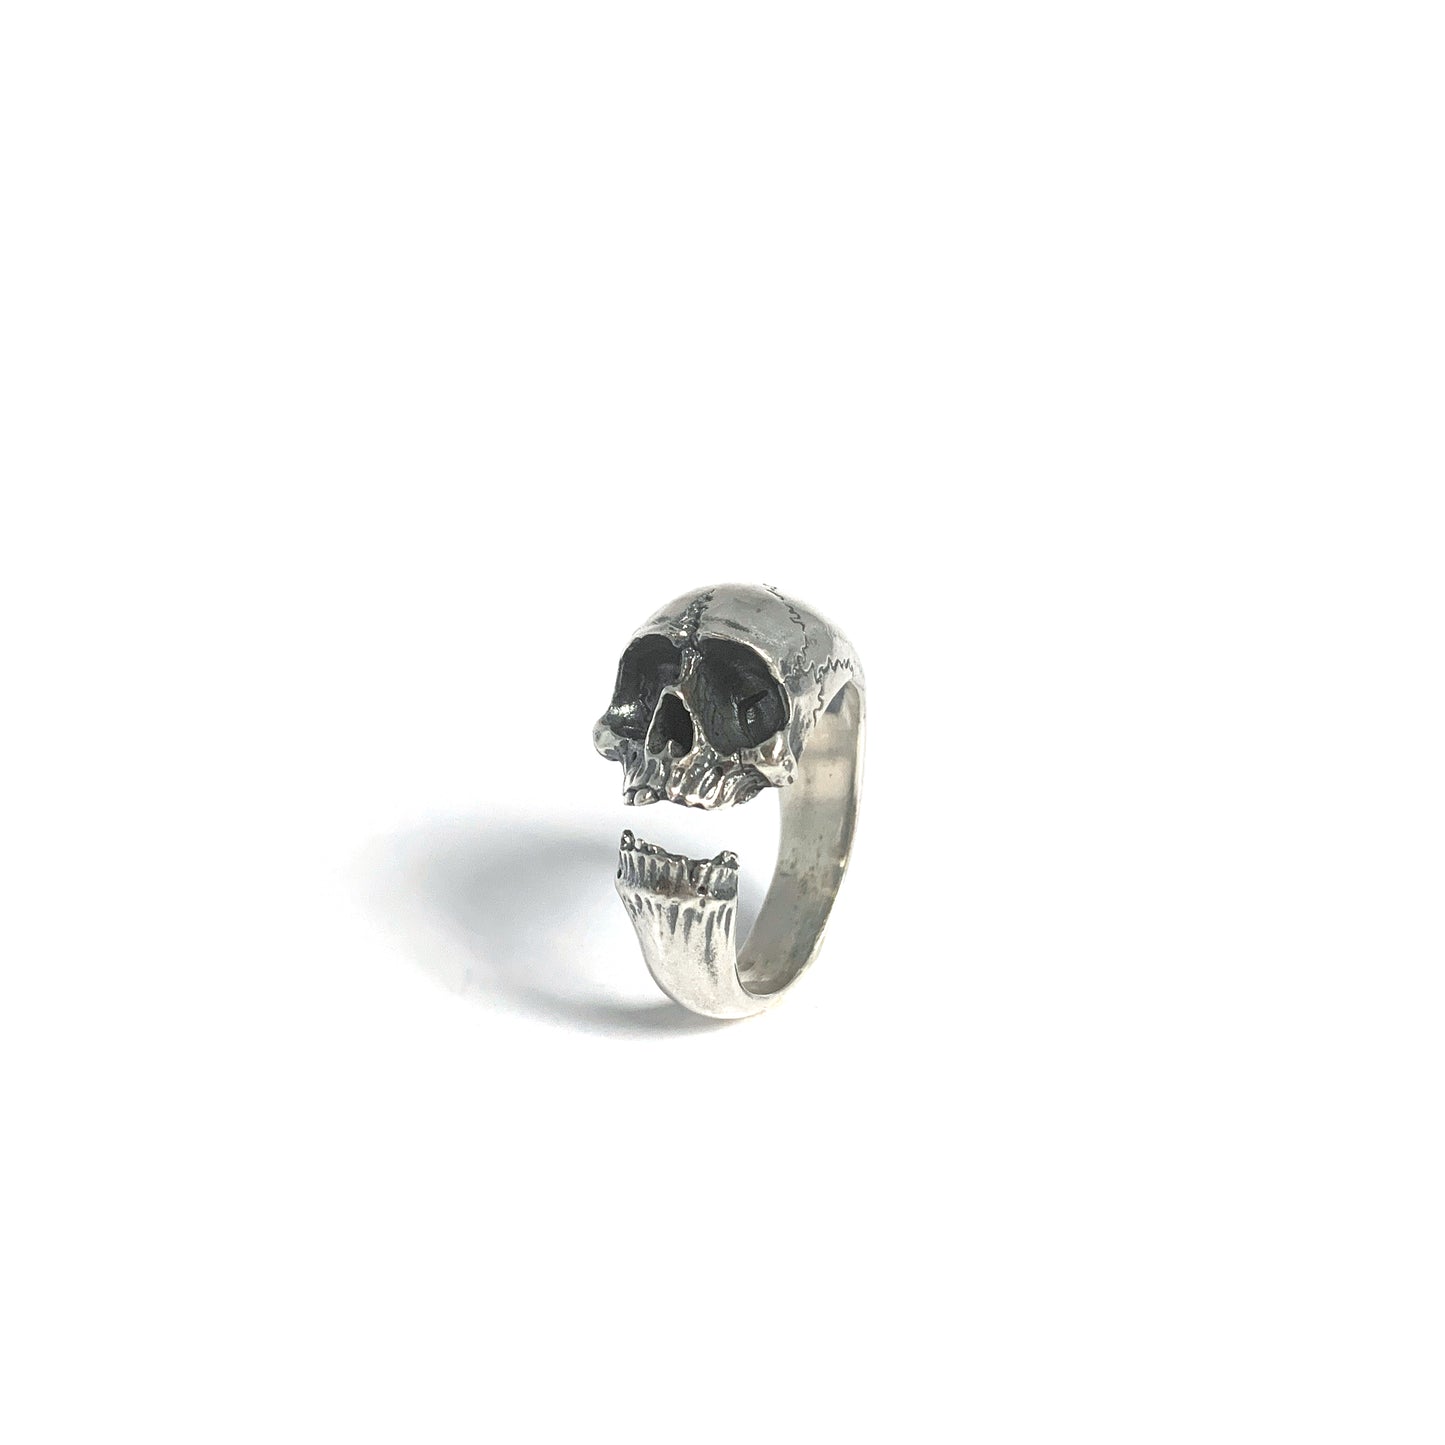 Wraparound Memento Mori Skull Ring